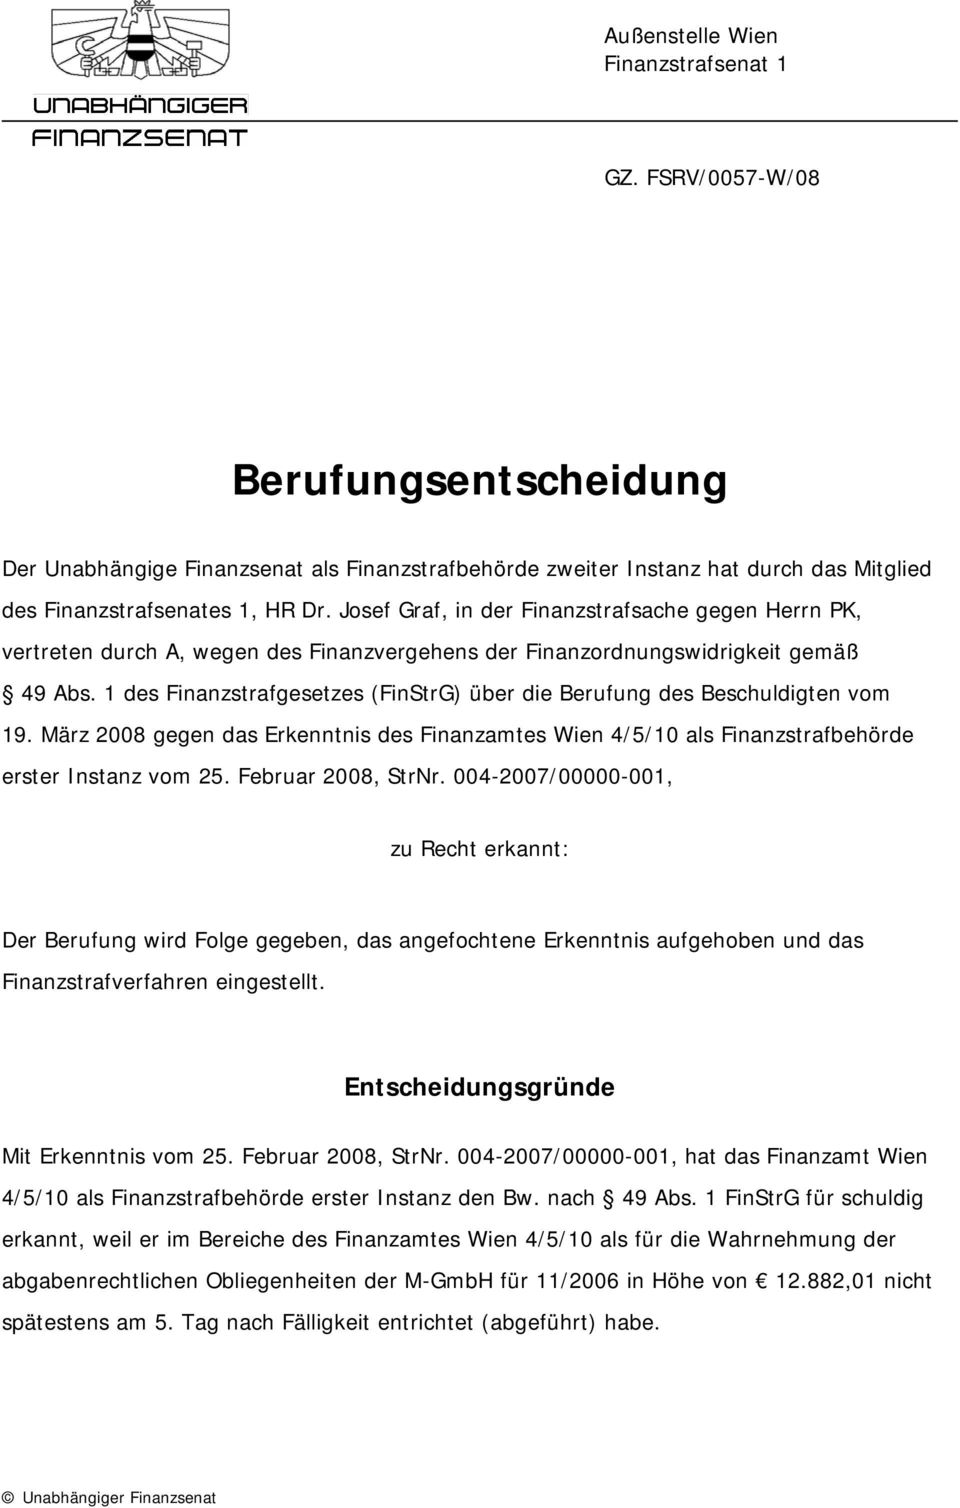 1 des Finanzstrafgesetzes (FinStrG) über die Berufung des Beschuldigten vom 19. März 2008 gegen das Erkenntnis des Finanzamtes Wien 4/5/10 als Finanzstrafbehörde erster Instanz vom 25.